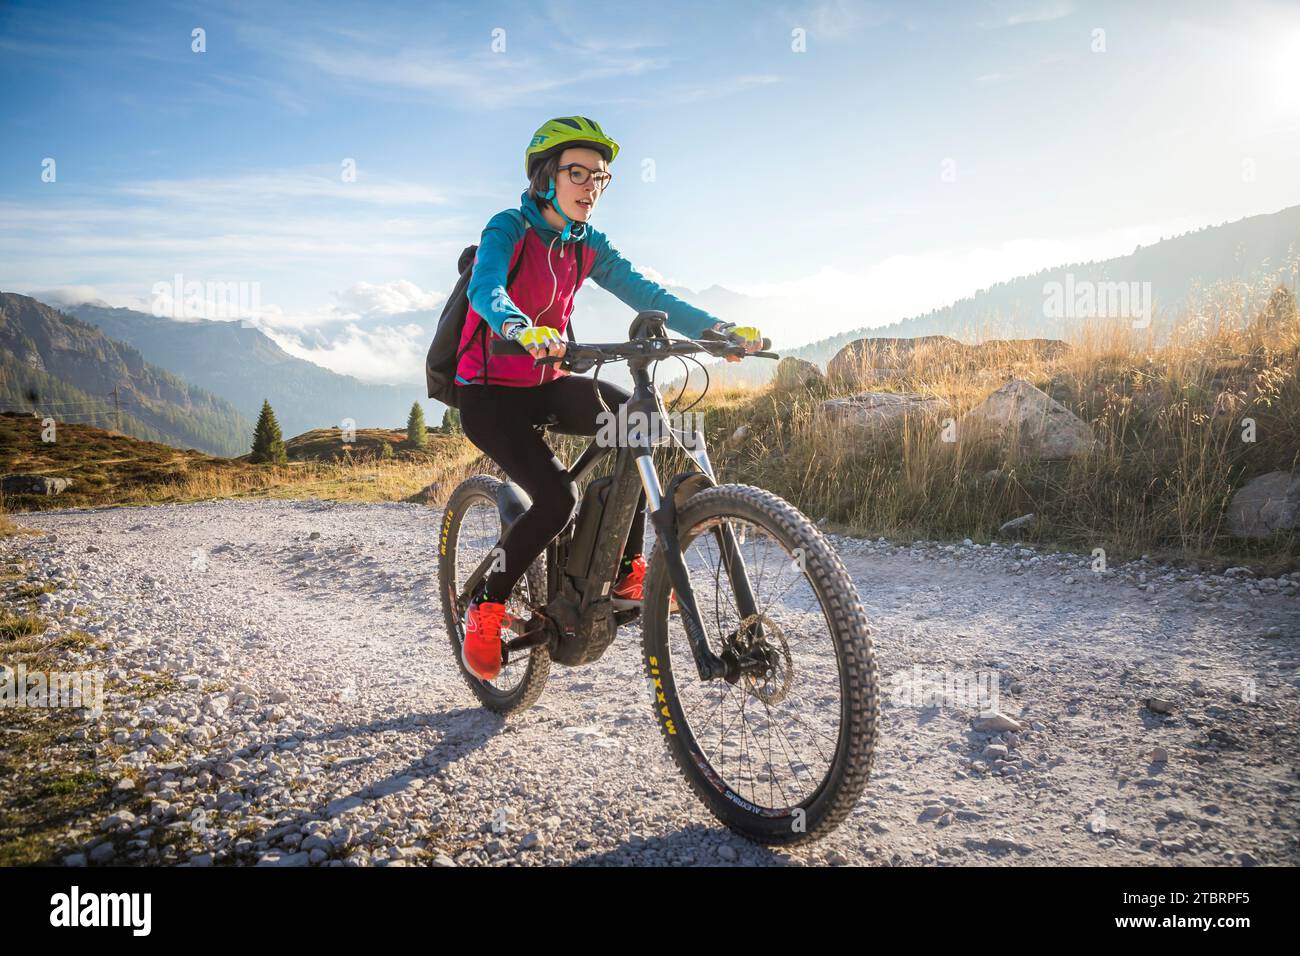 Italie, Vénétie, province de Belluno, activité de plein air, adolescente le long d'un chemin de terre en vélo électrique Banque D'Images